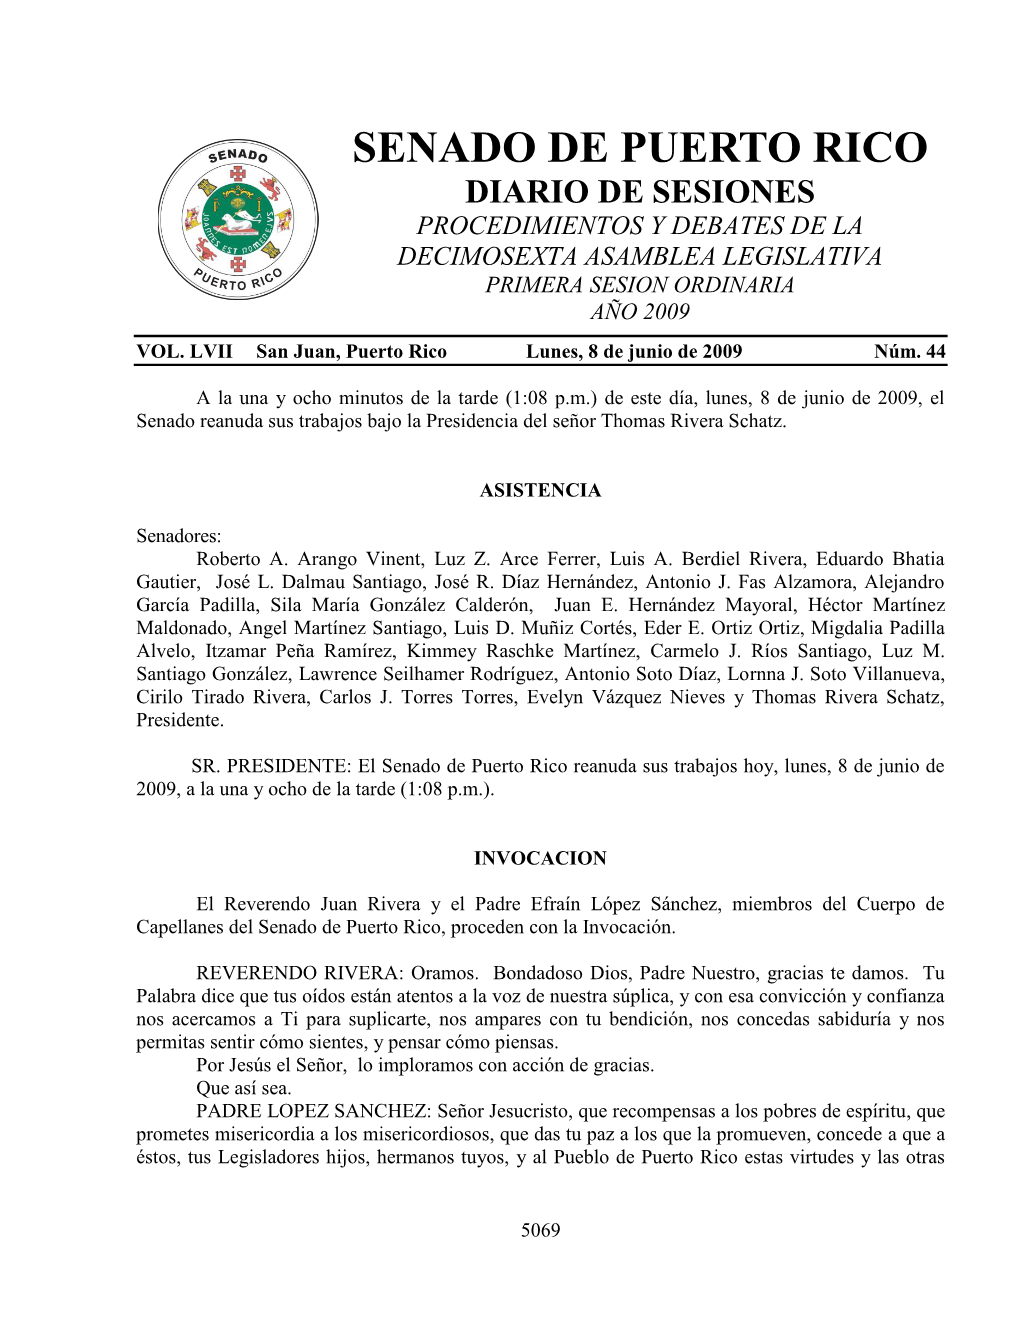 Senado De Puerto Rico Diario De Sesiones Procedimientos Y Debates De La Decimosexta Asamblea Legislativa Primera Sesion Ordinaria Año 2009 Vol